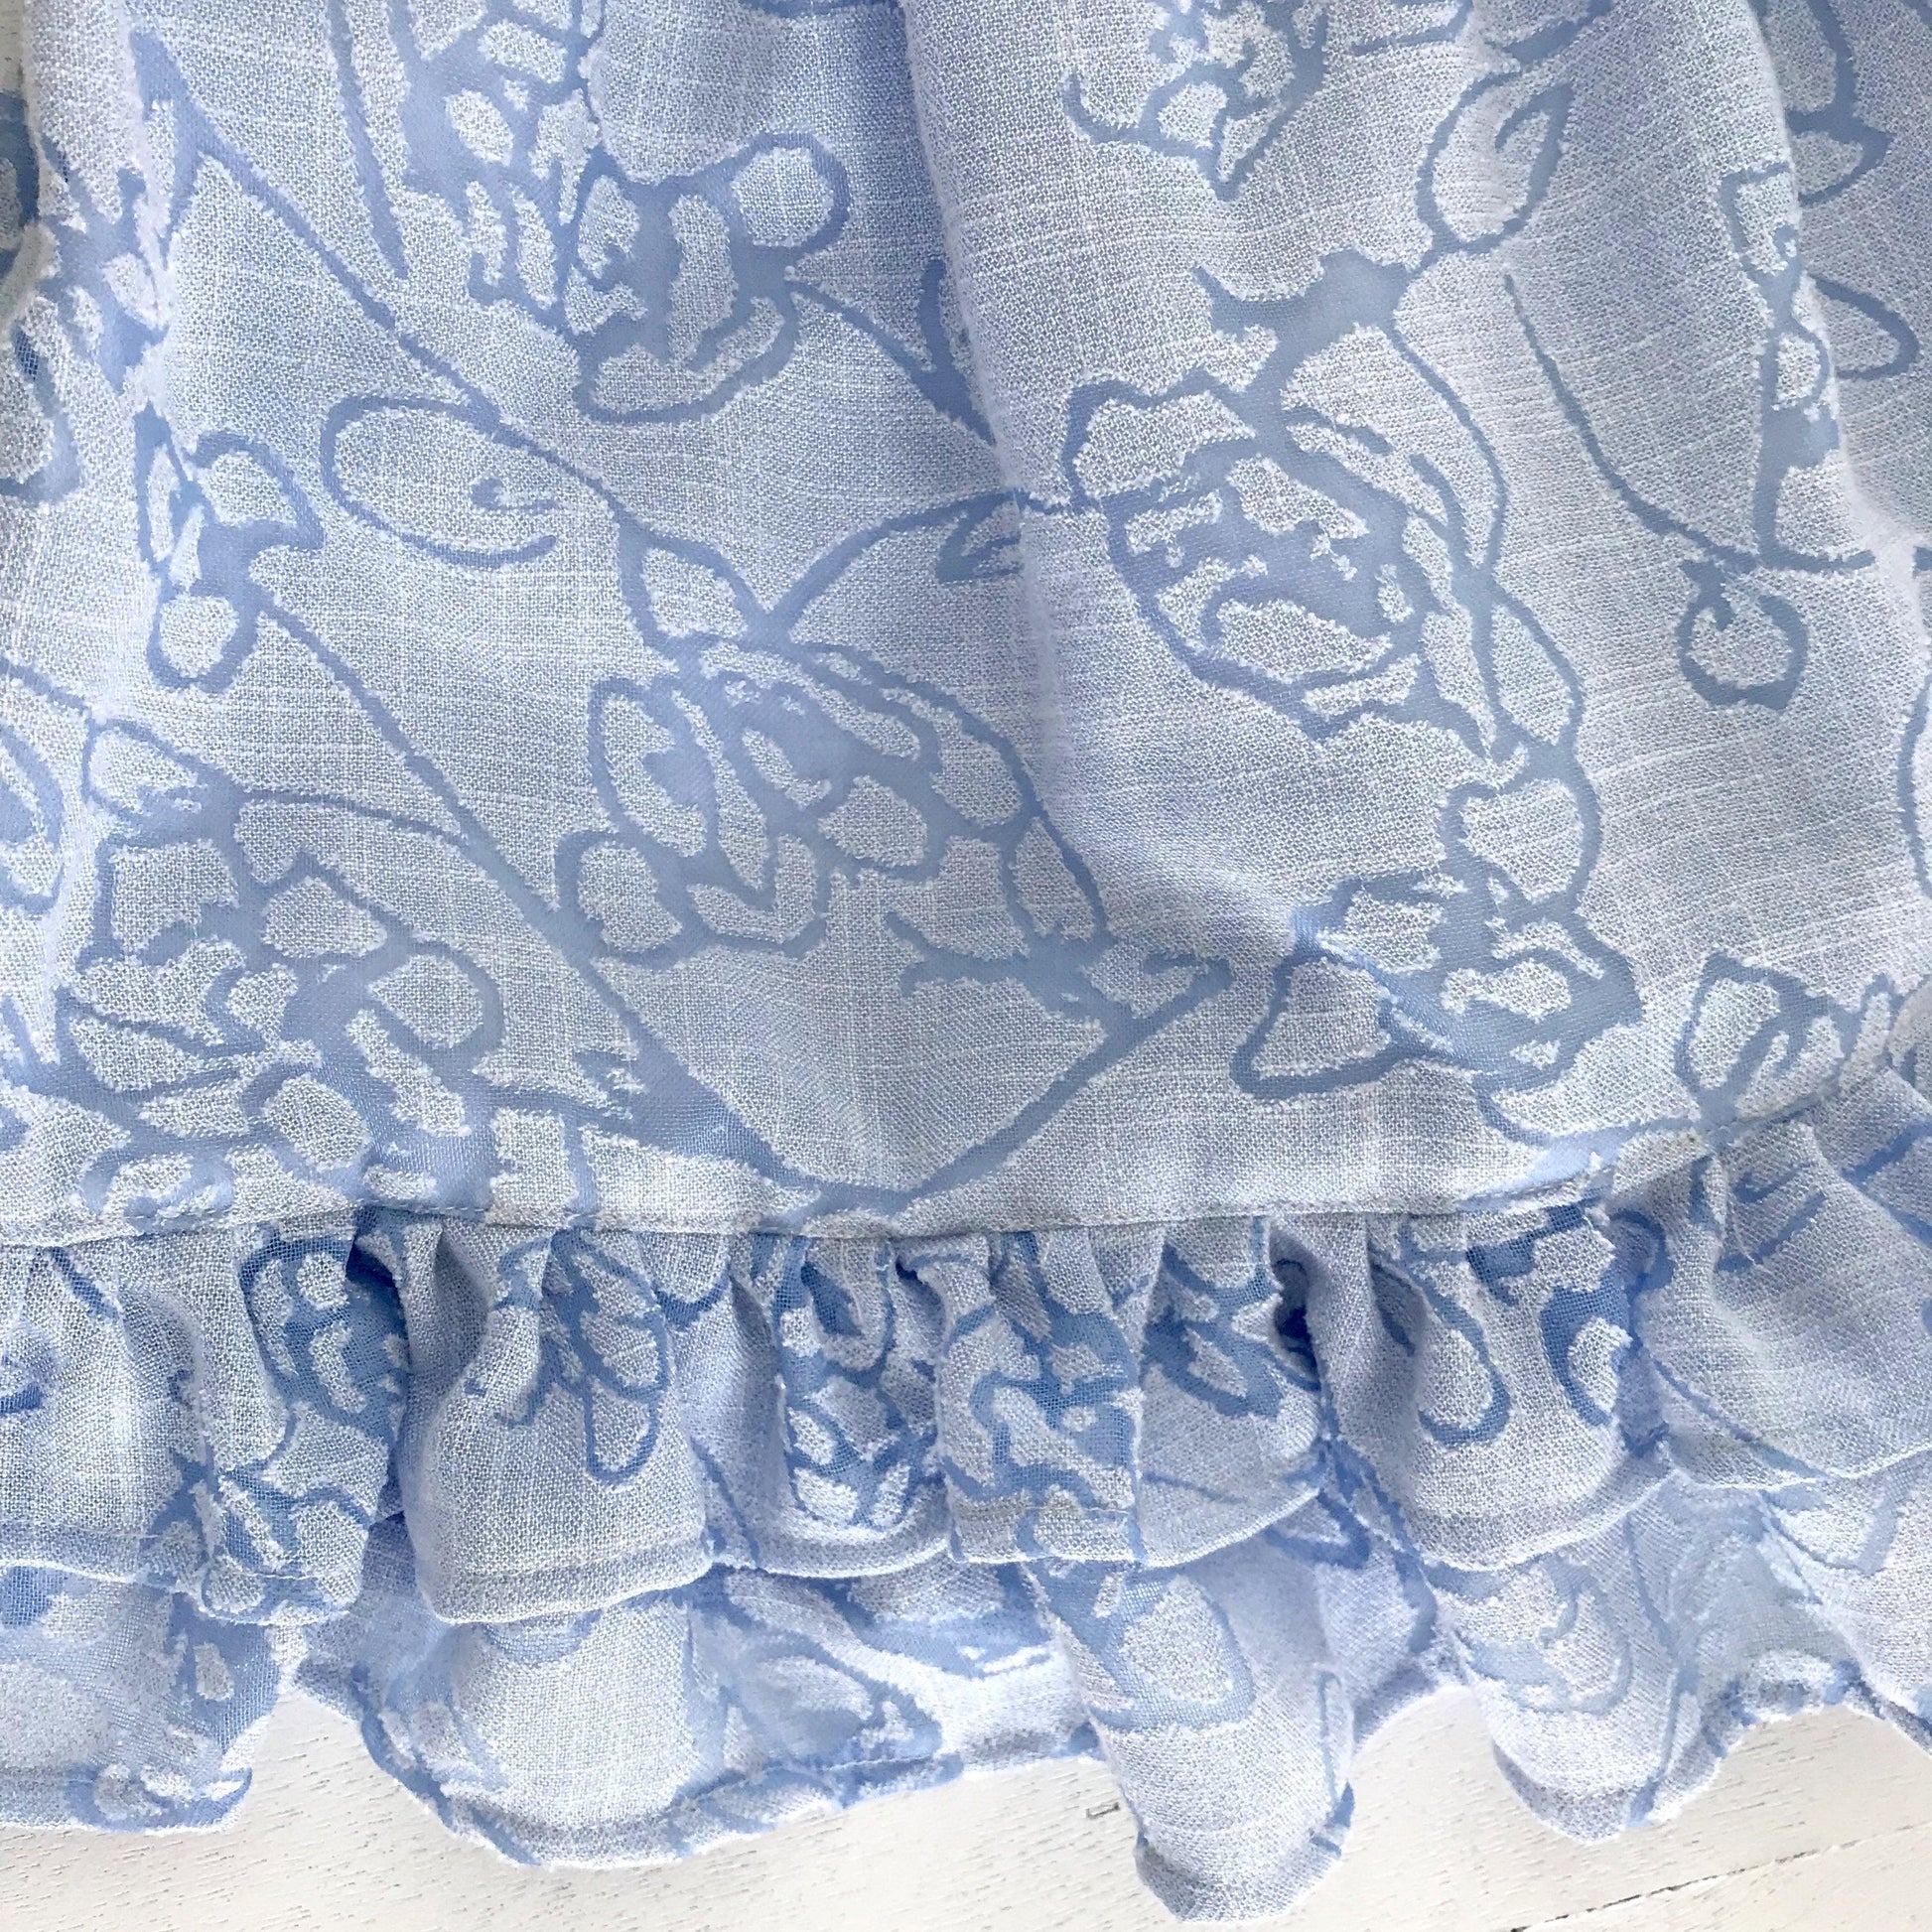 Dahlia Dress in Aerial Floral Print - Lil' Tati